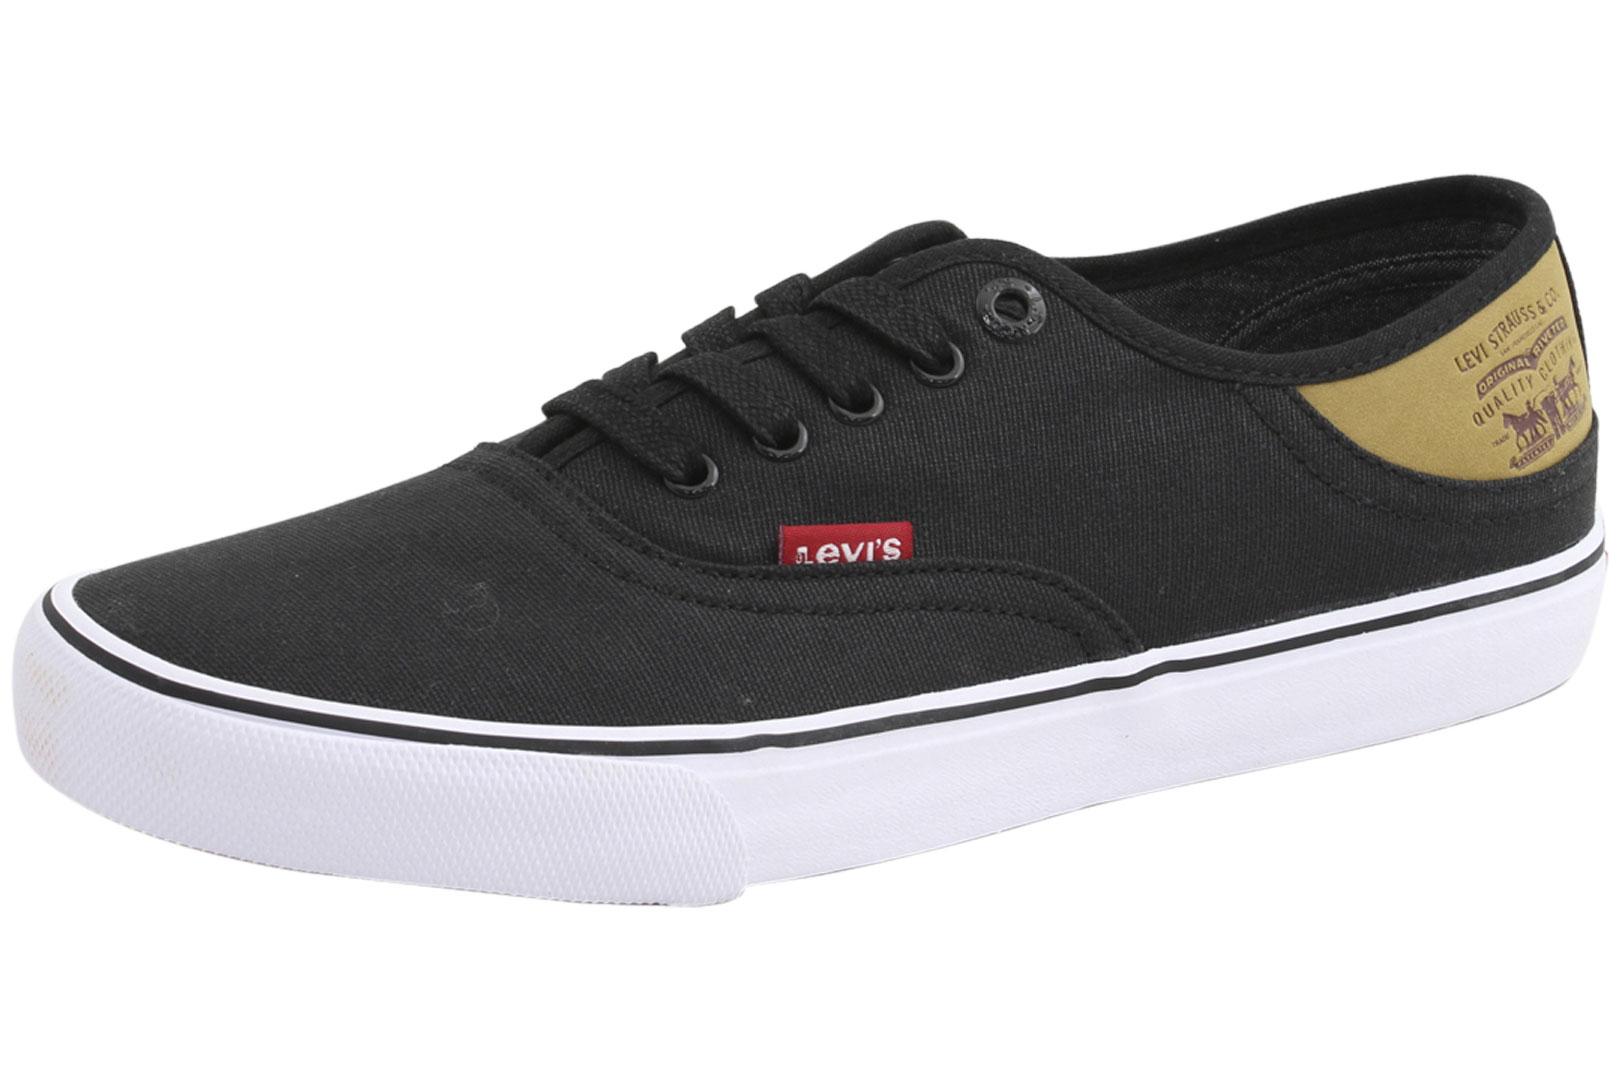 Levi's Men's Monterey Buck Sneakers Shoes - Black/Brown - 9.5 D(M) US